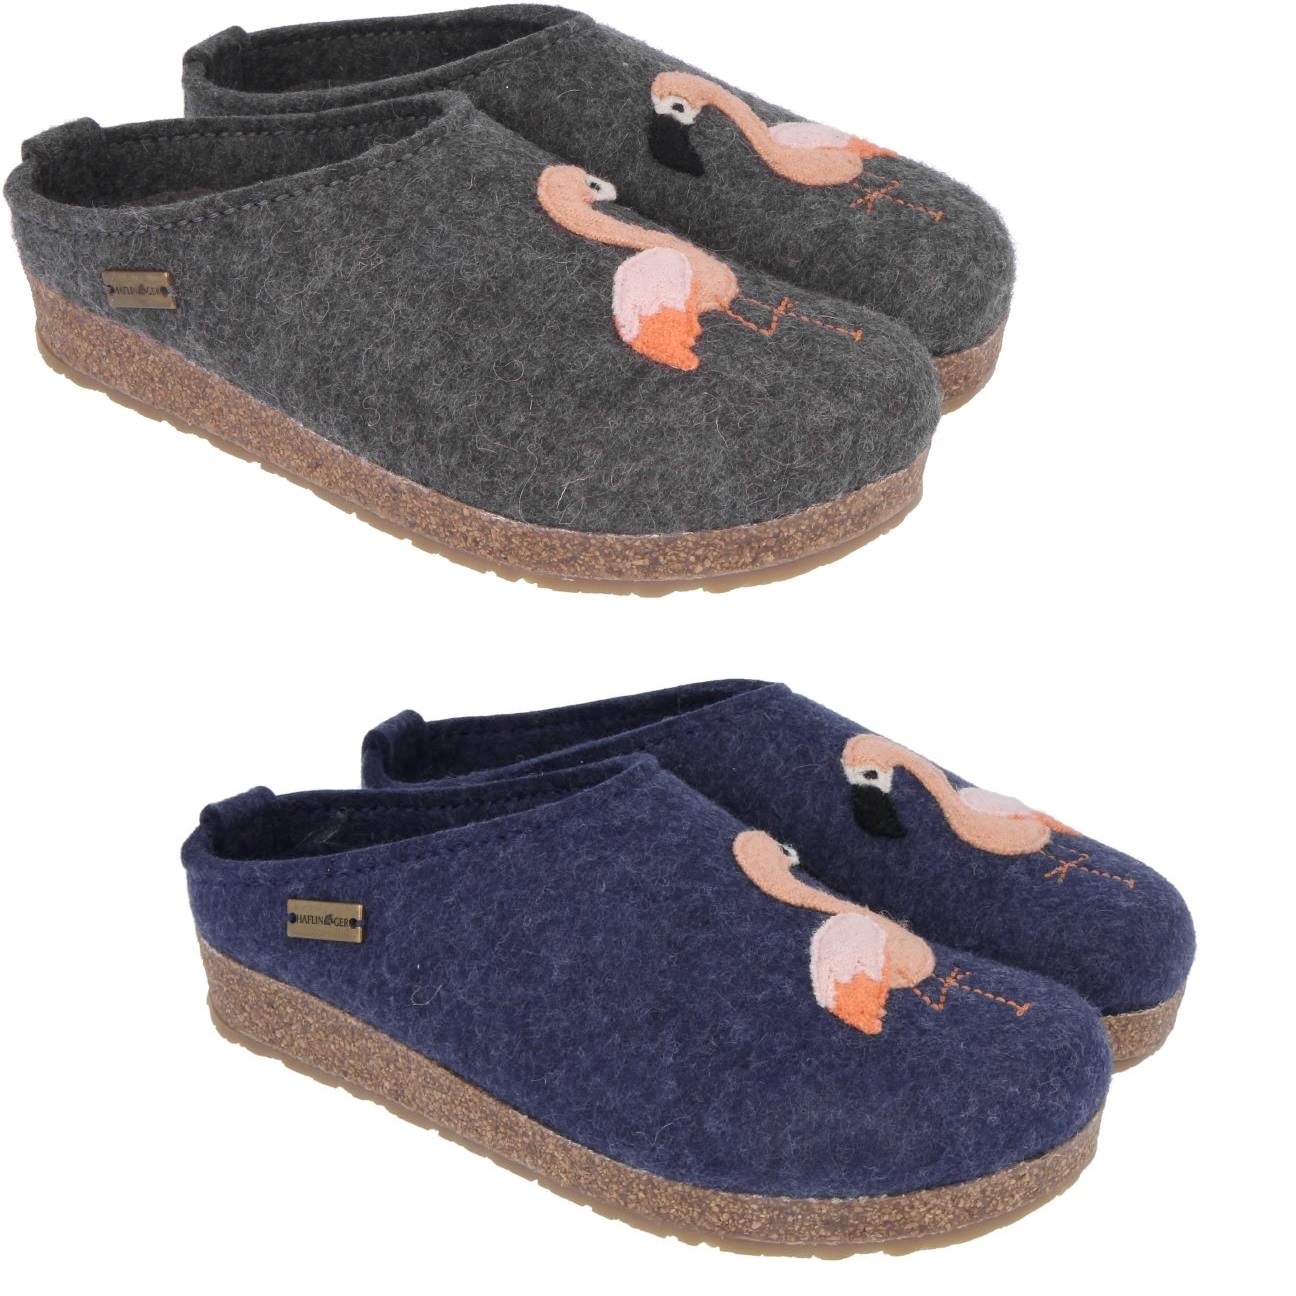 haflinger felt slippers